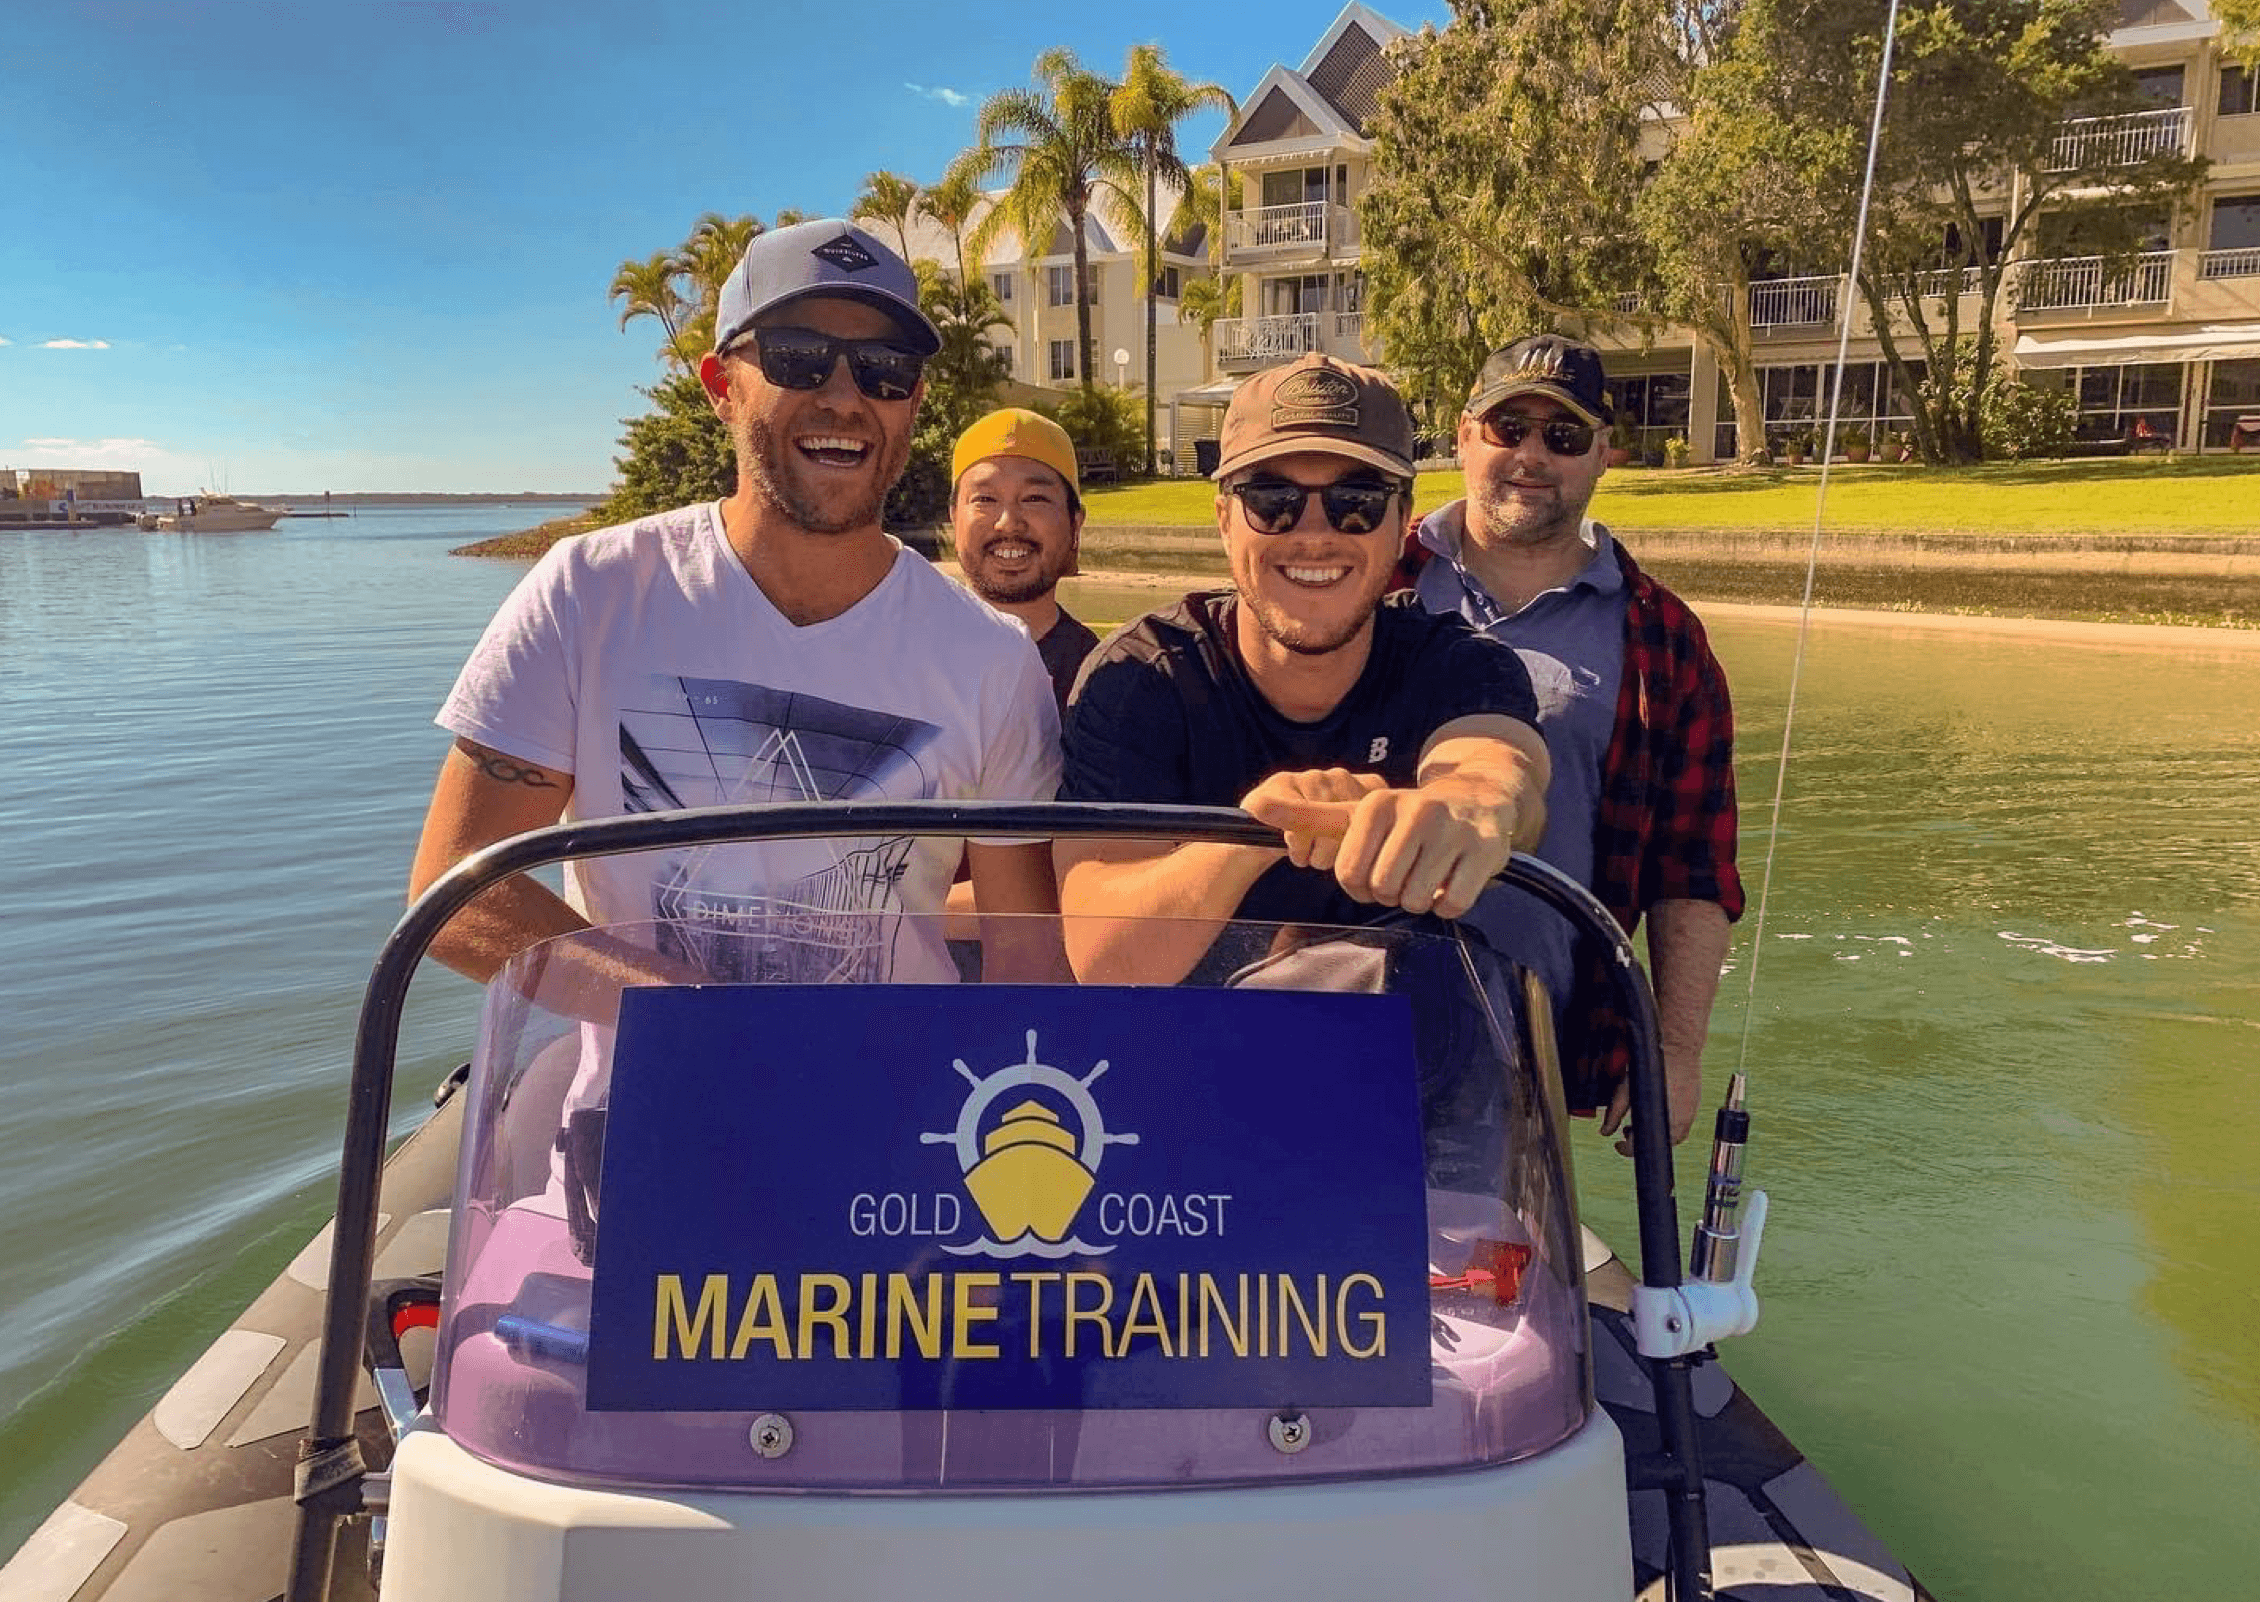 Gold Coast Marine Training